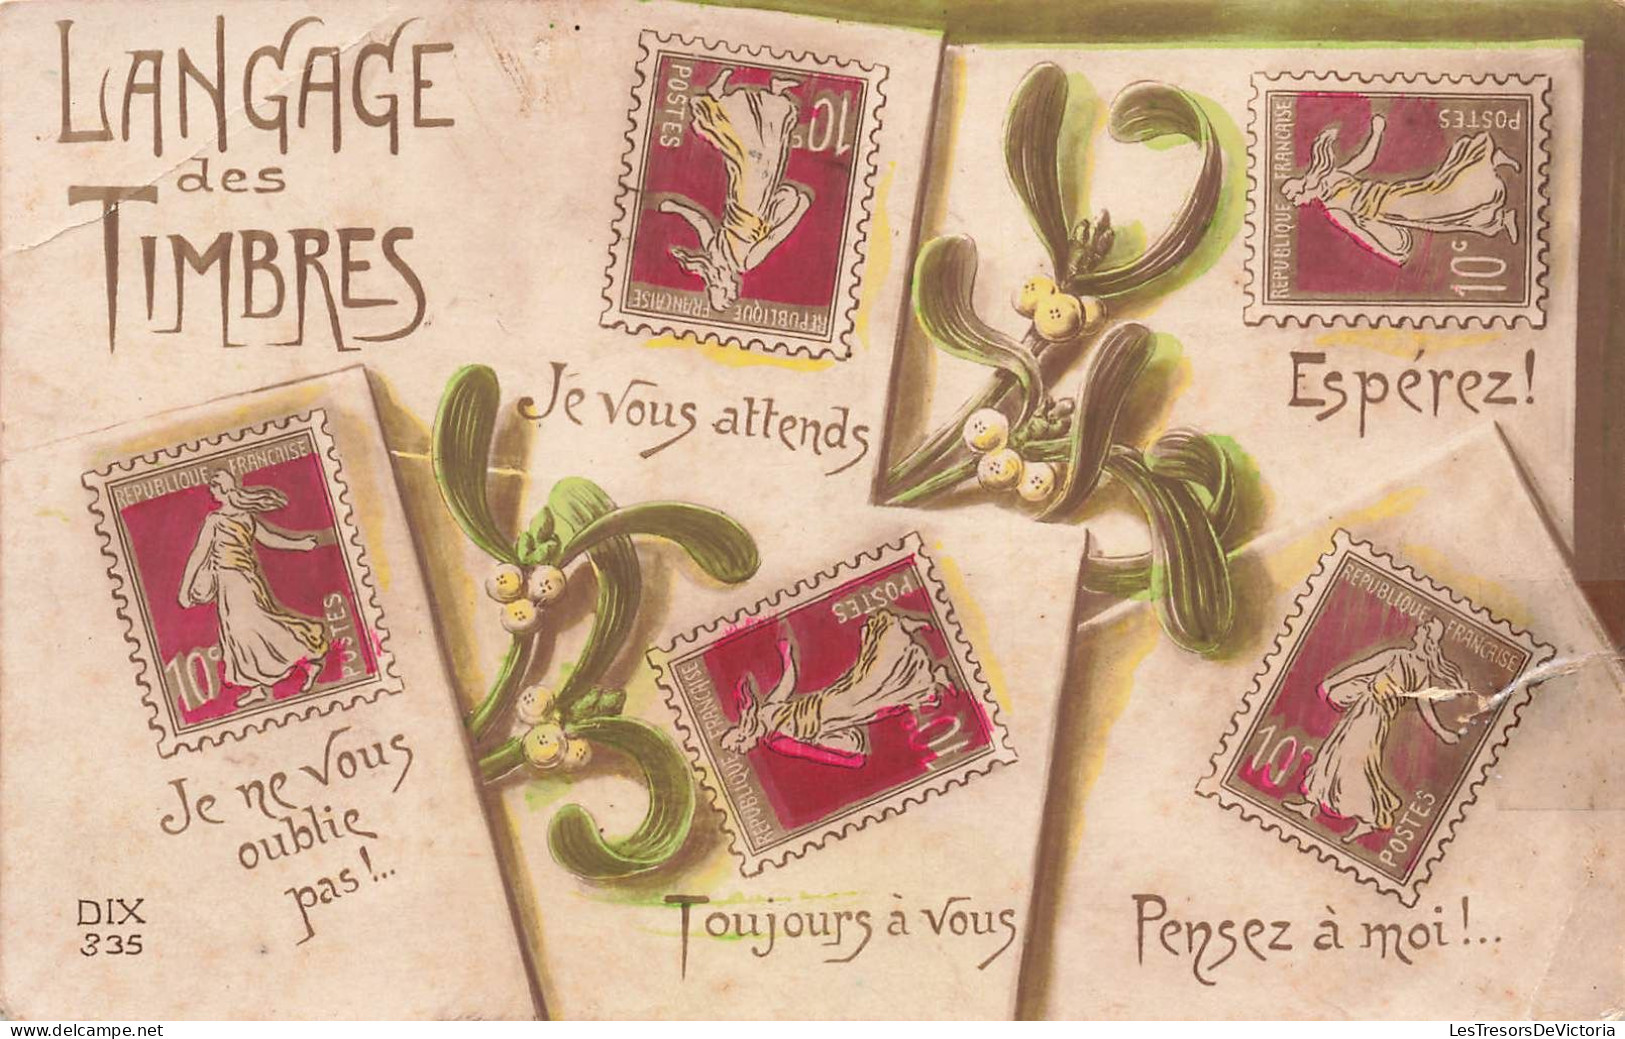 TIMBRES - Langage Des Timbres - Colorisé - Carte Postale Ancienne - Timbres (représentations)